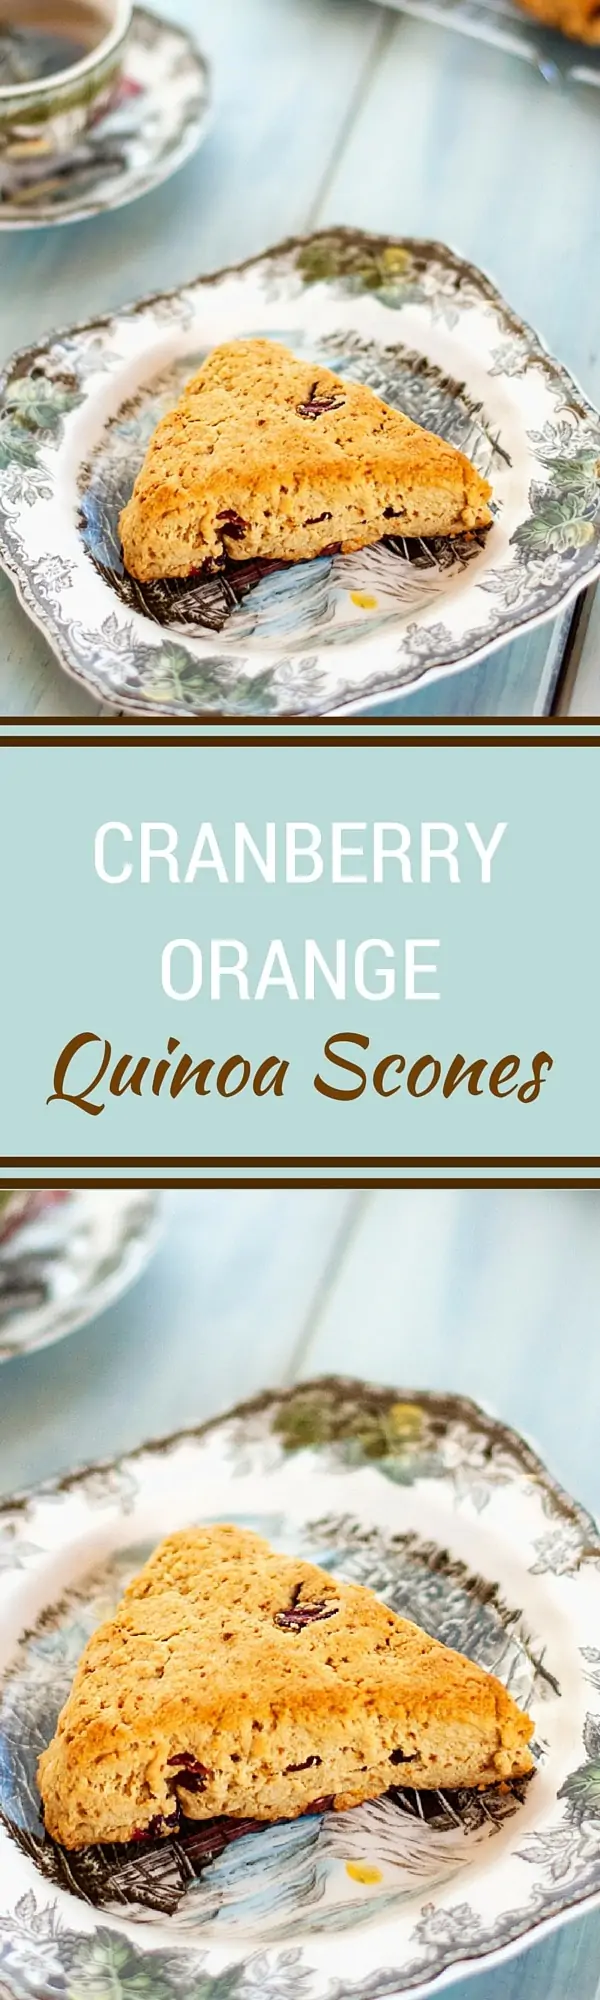 Cranberry Orange Quinoa Scones